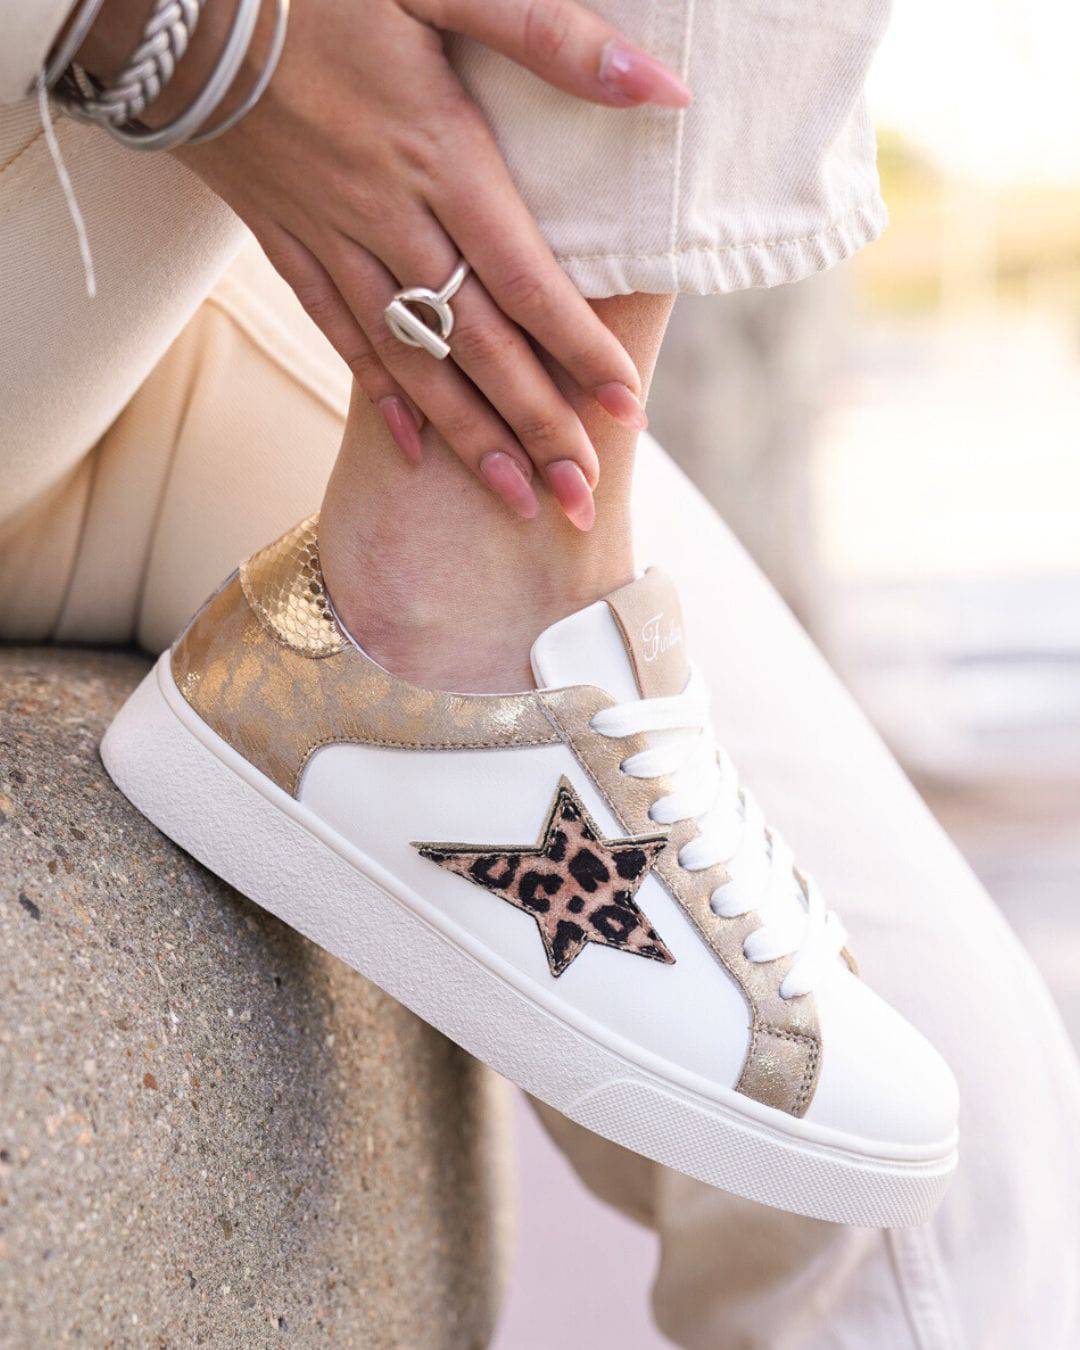 Damen-Sneaker in Weiß und Gold mit Schnürsenkeln - Sadio - Casualmode.de